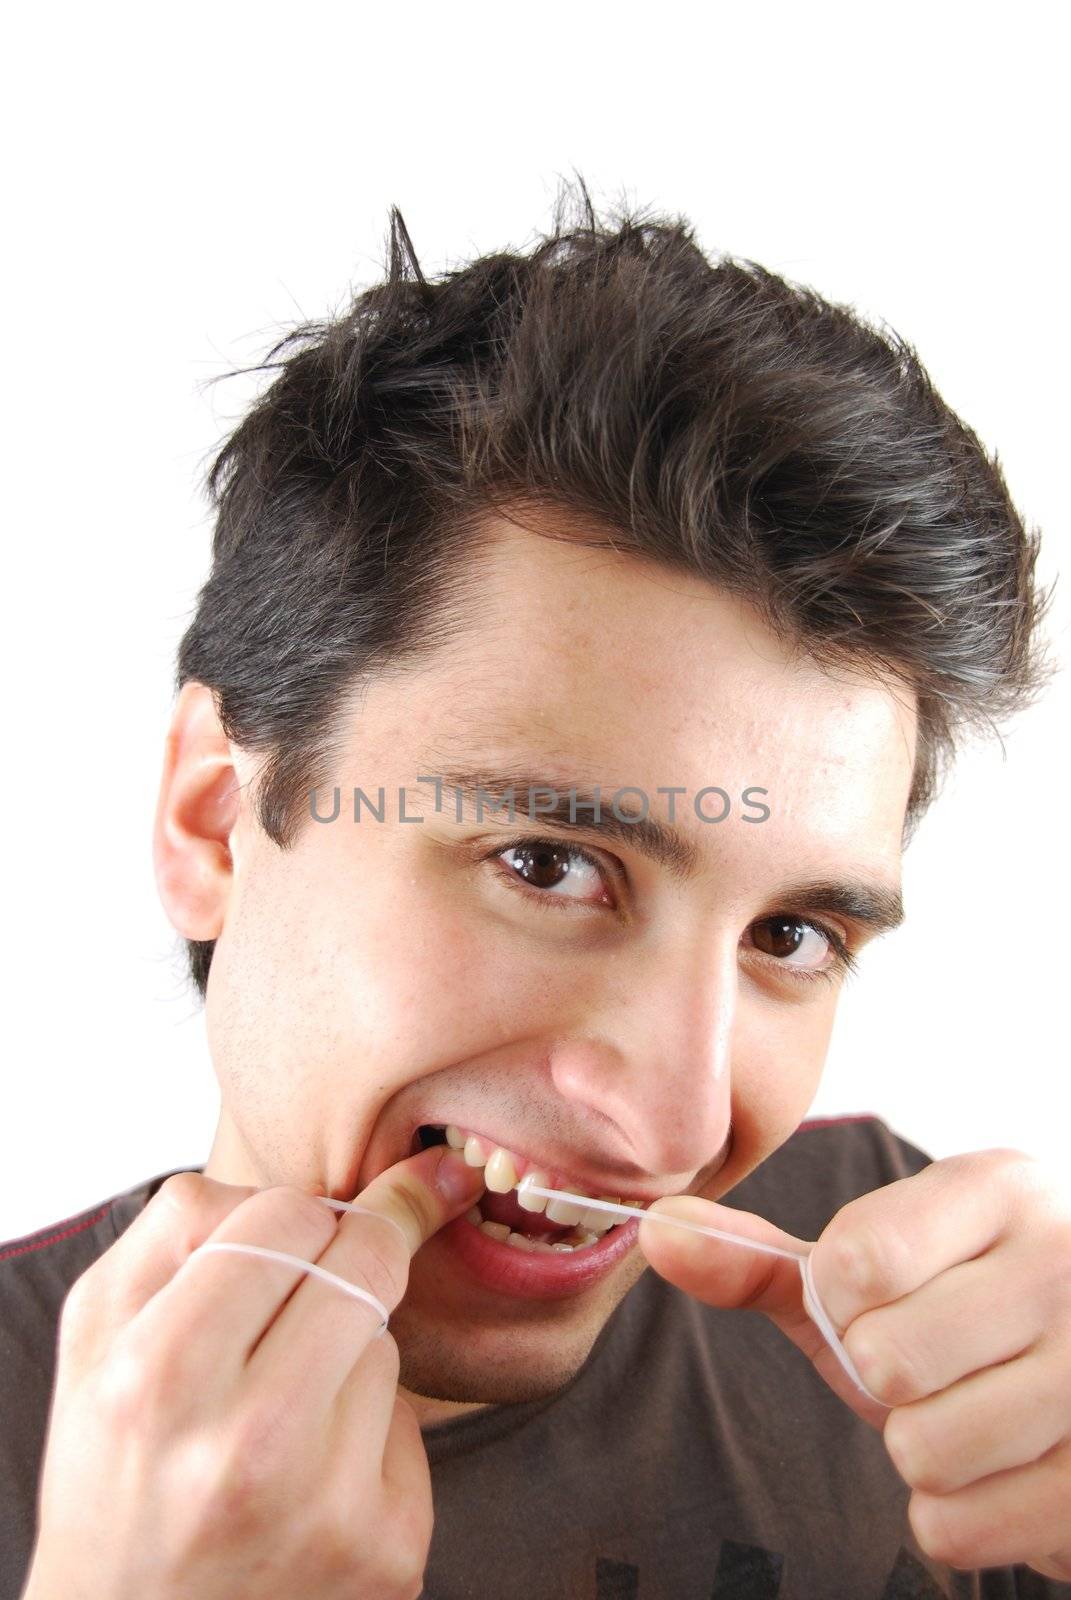 Man flossing his teeth by luissantos84